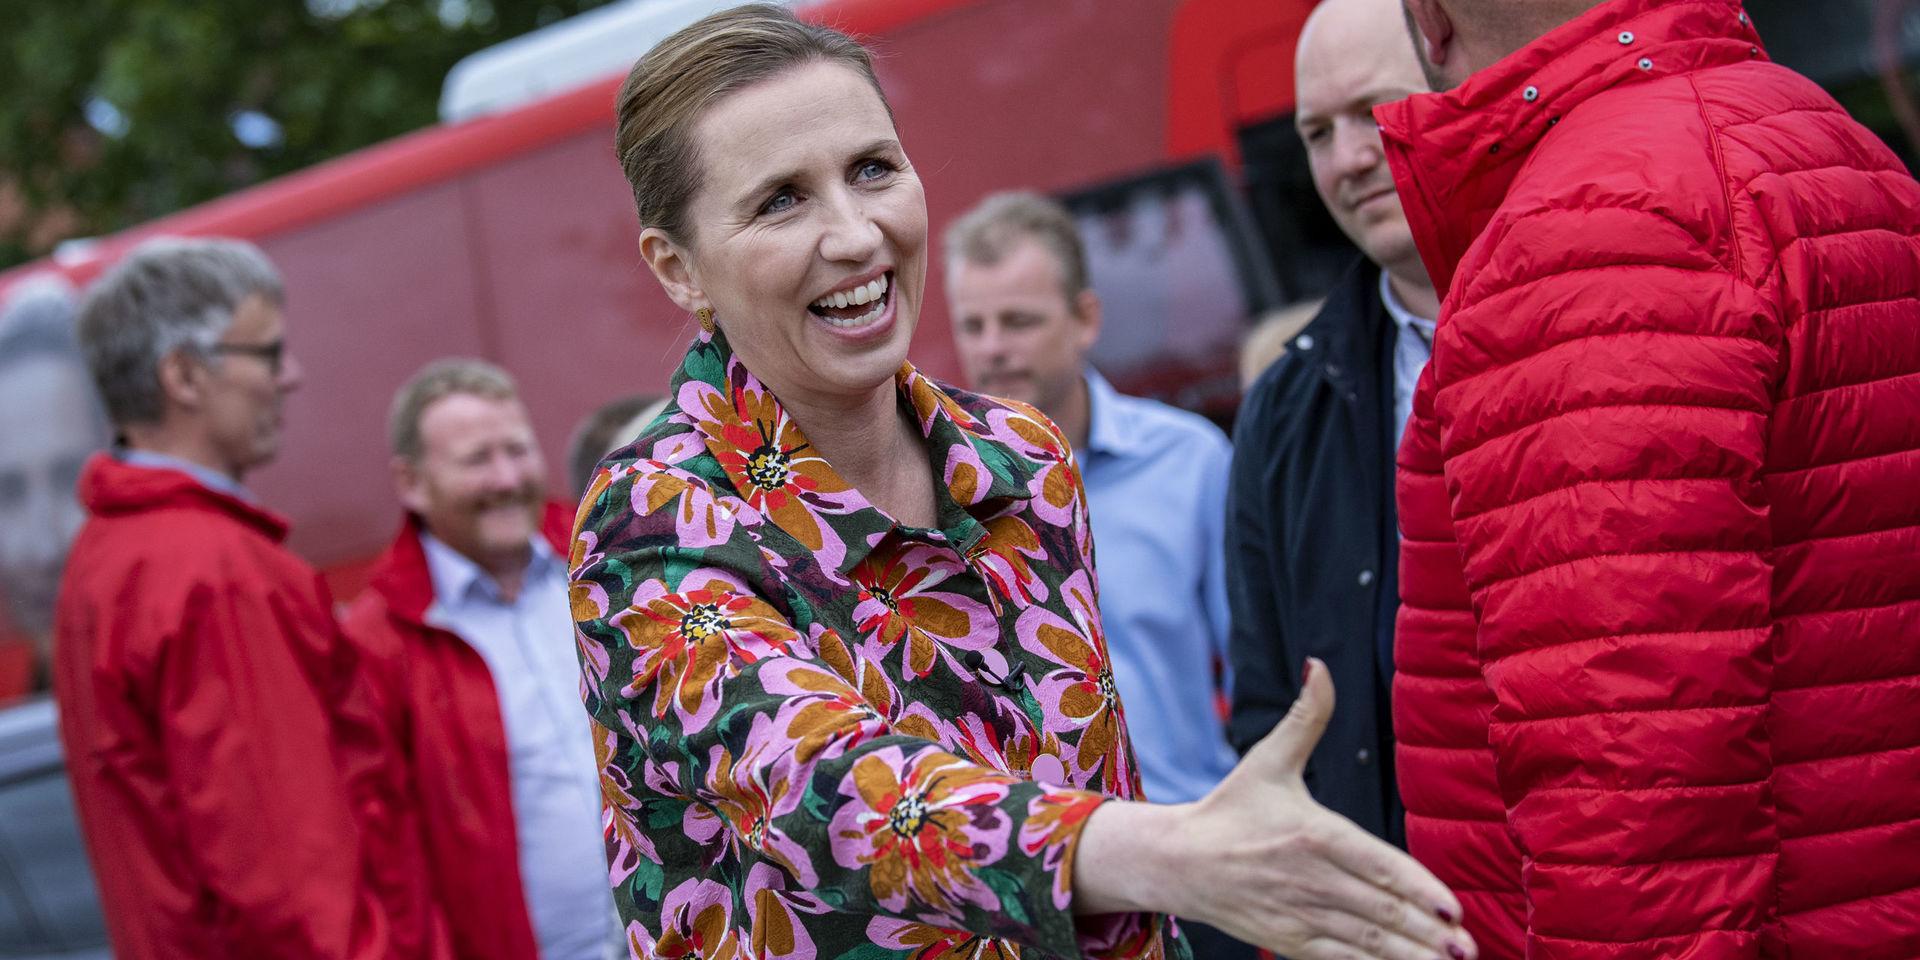 Danmark. Socialdemokraternas partiledare Mette Frederiksen förväntas bli Danmarks nästa statsminister.